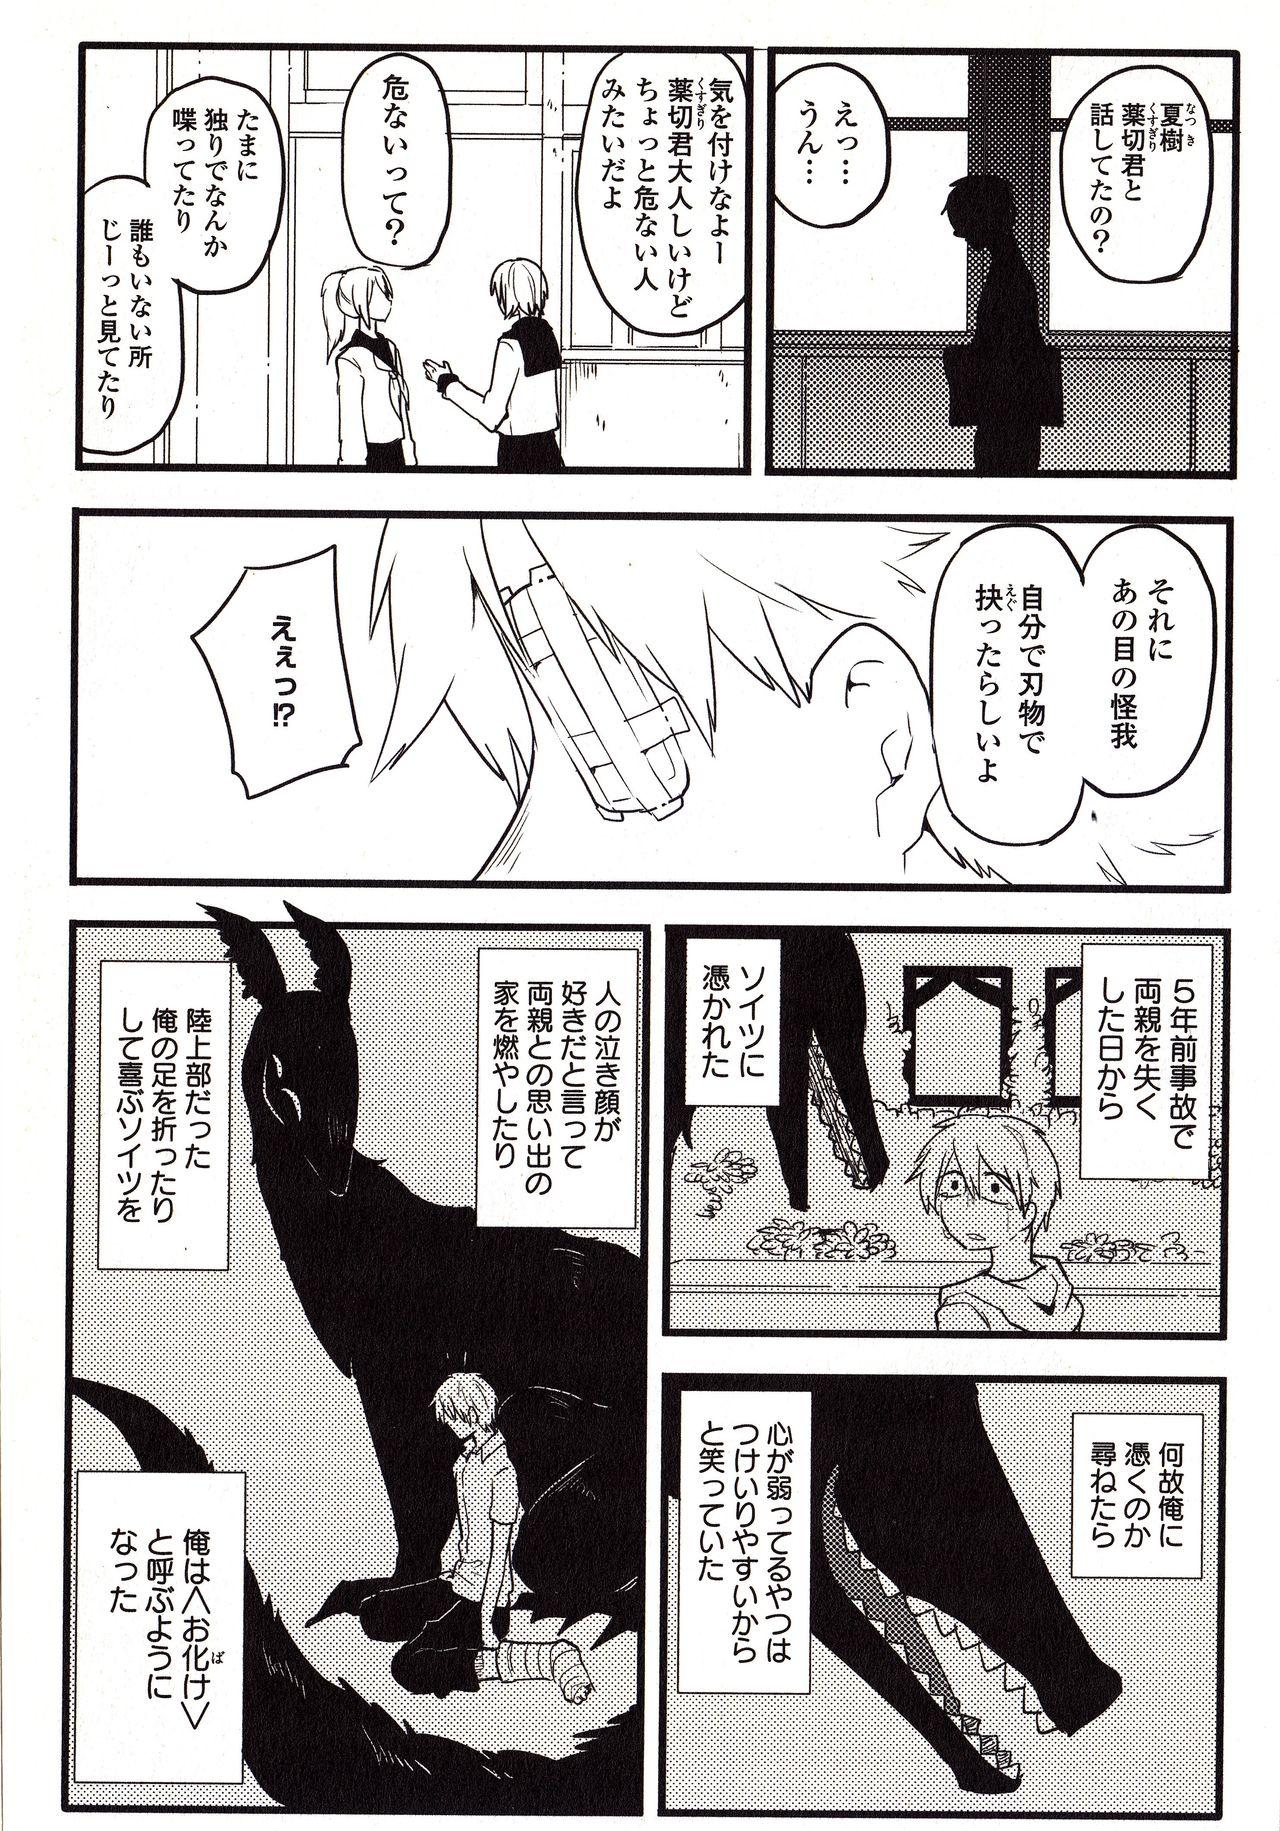 Studs Sanzo manga Sexteen - Page 7